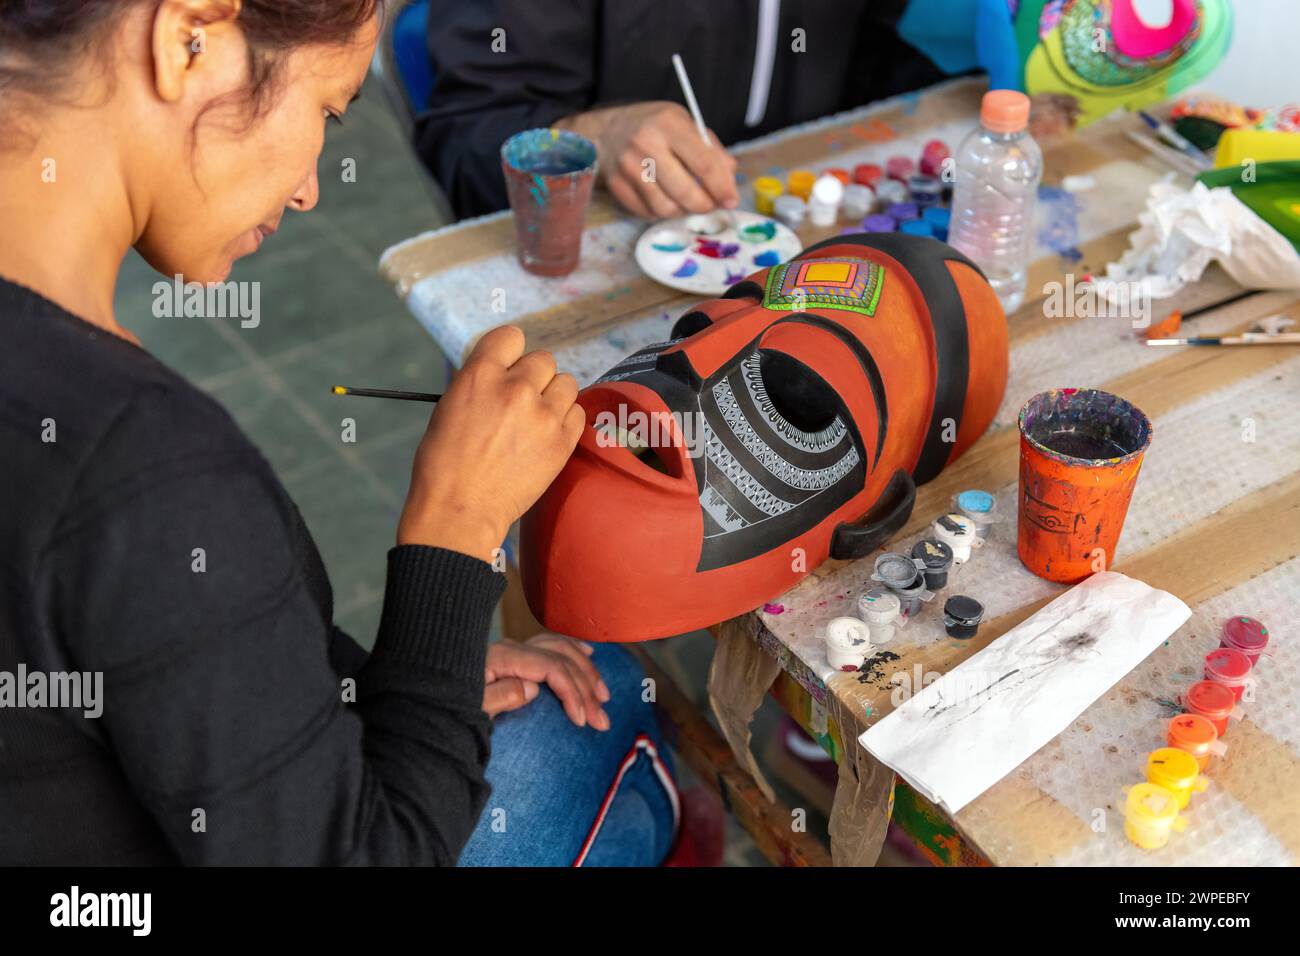 Jeune femme artisanale peignant un masque mexicain en bois de copal fait à la main, arts et artisanat dans le style alebrije, San Martin Tilcajete, vallée d'Oaxaca, Mexique. Banque D'Images